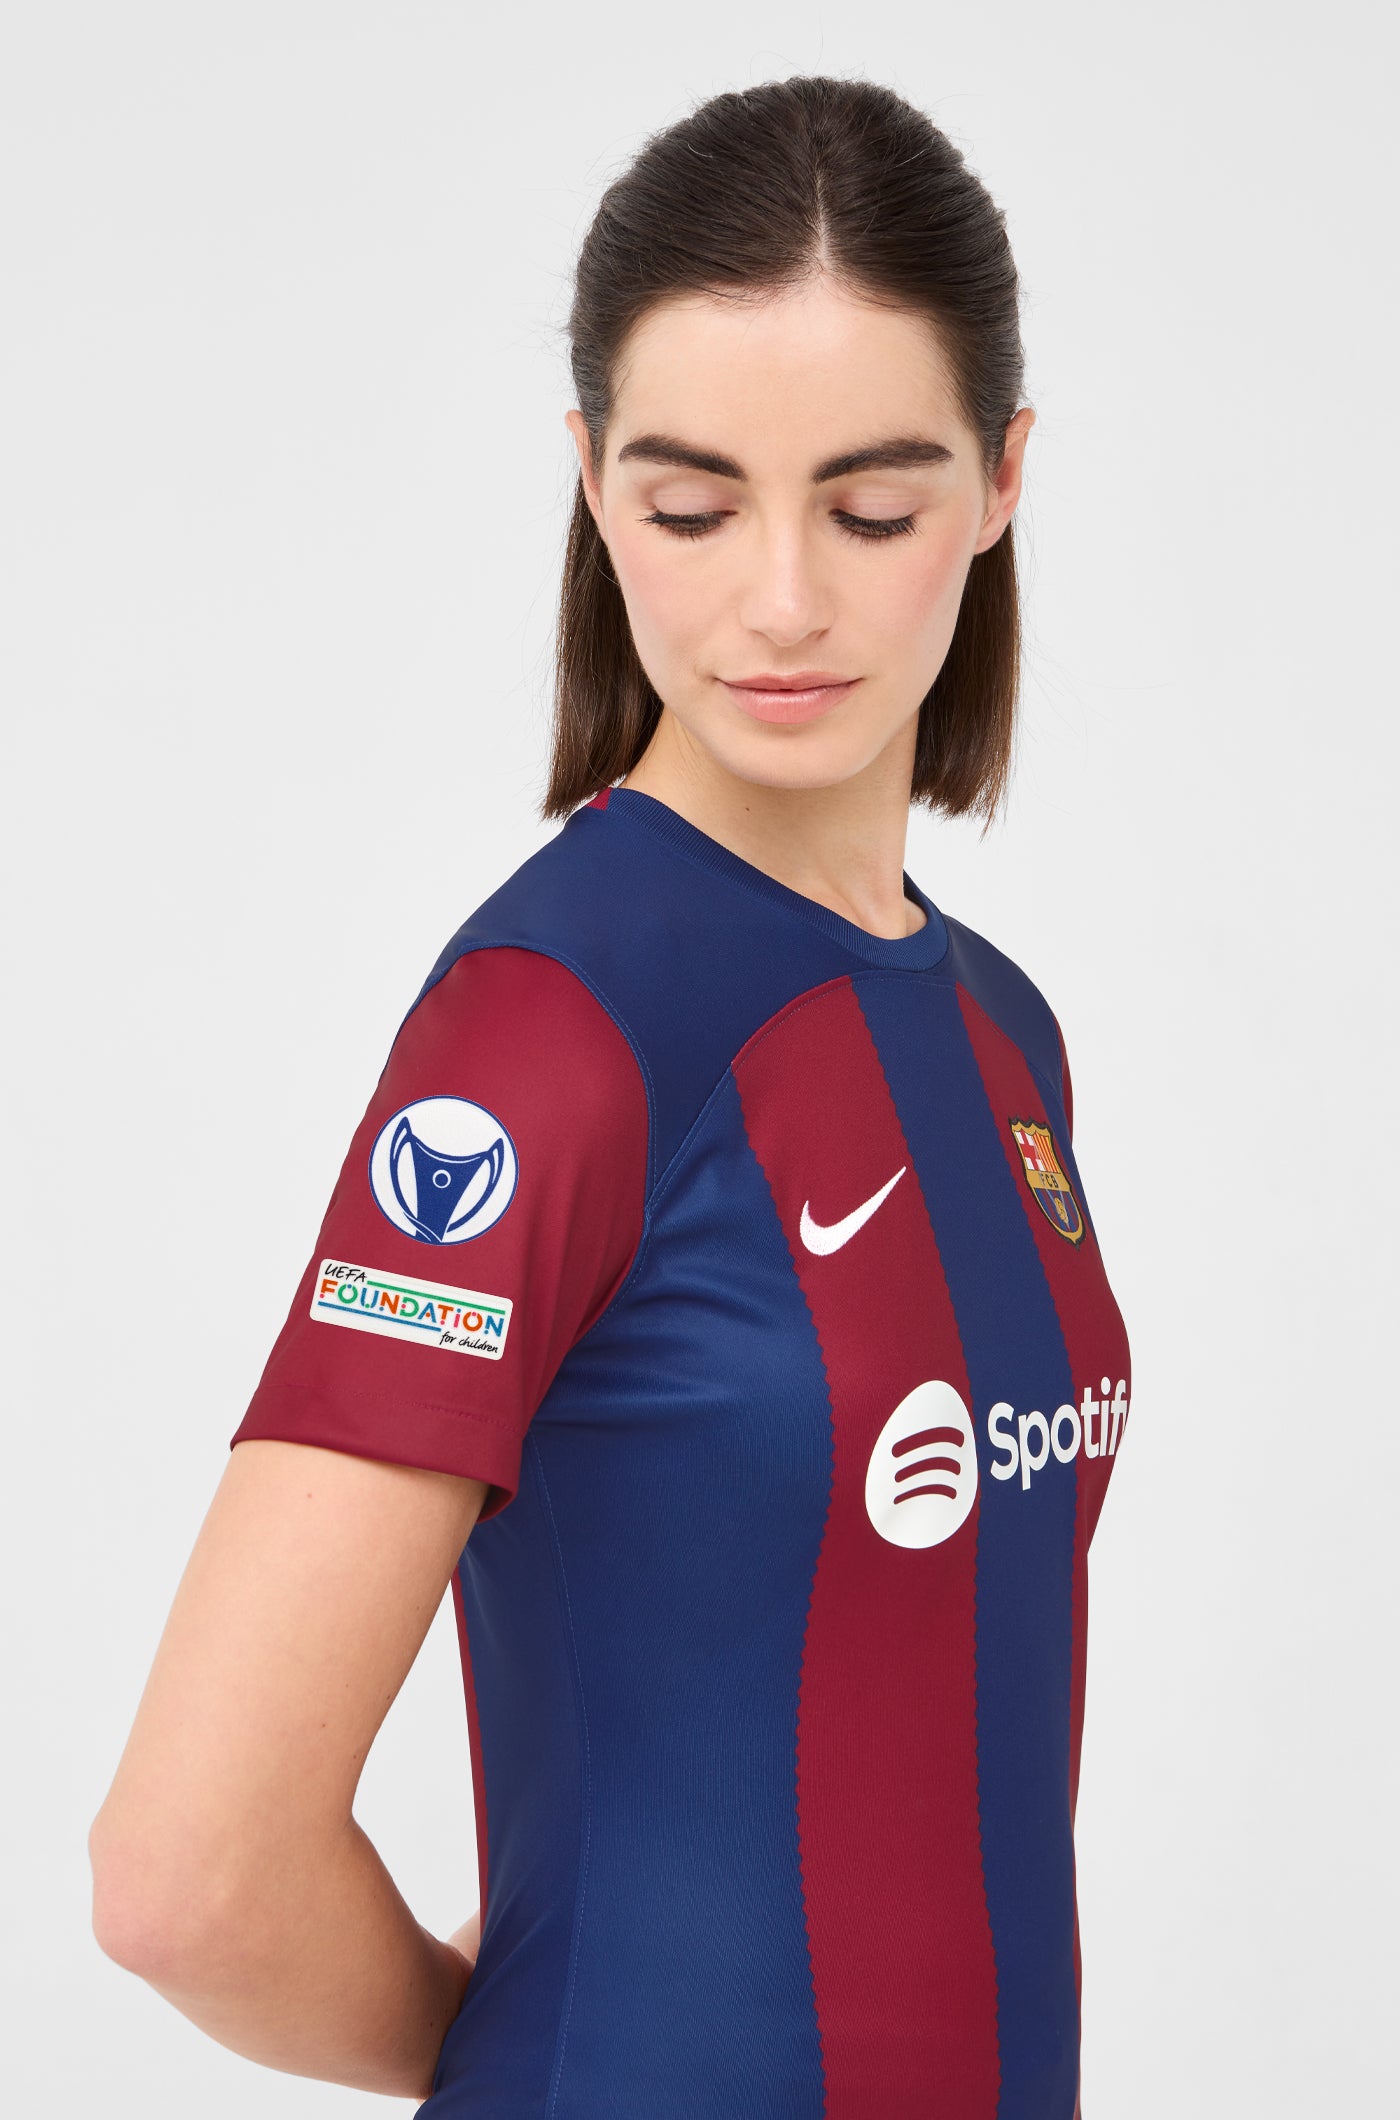 UWCL Camiseta primera equipación FC Barcelona 23/24 - Mujer - PATRI